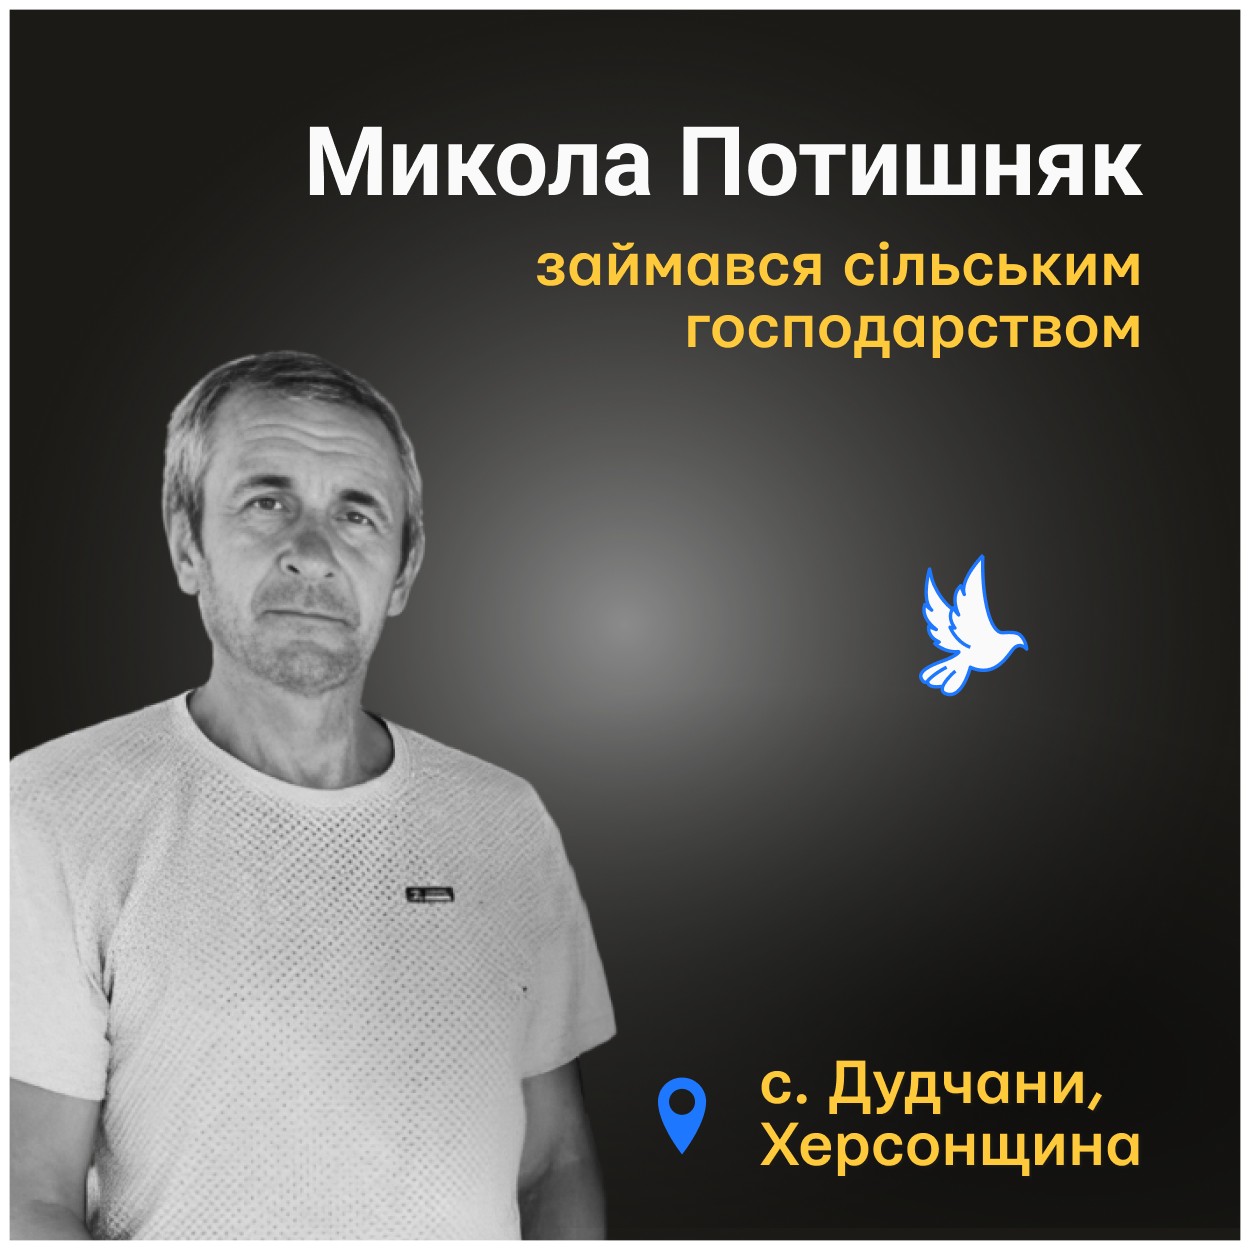 Меморіал: вбиті росією. Микола Потишняк, 59 років, Херсонщина